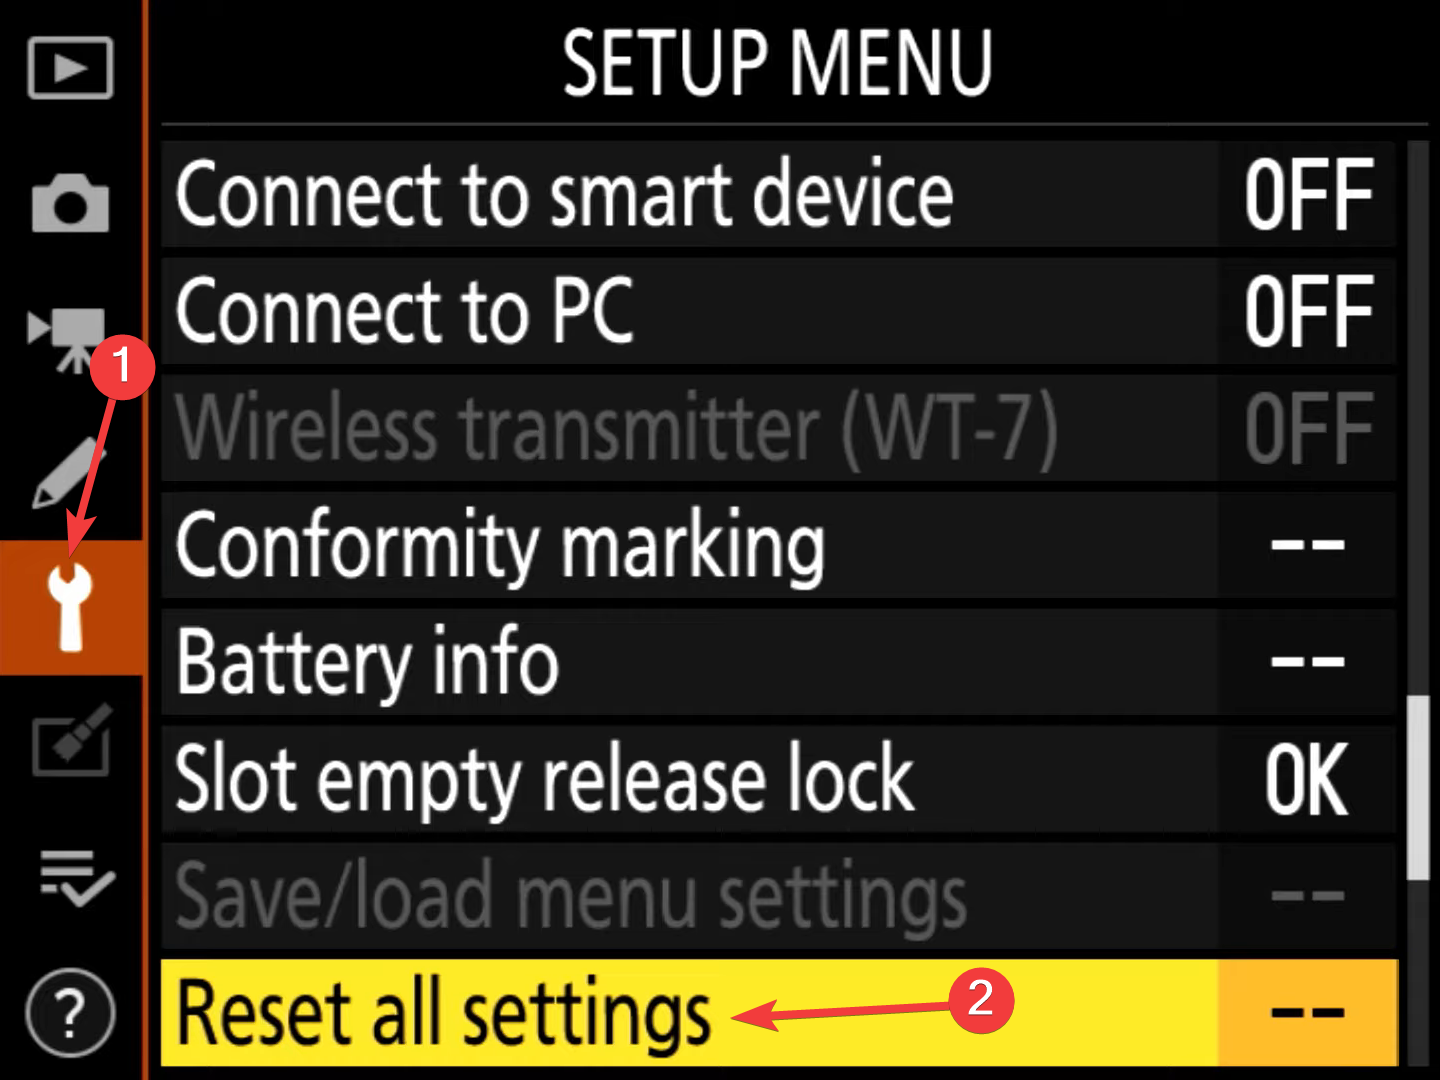 restablecer todas las configuraciones para reparar la cámara Nikon que no se conecta a Bluetooth